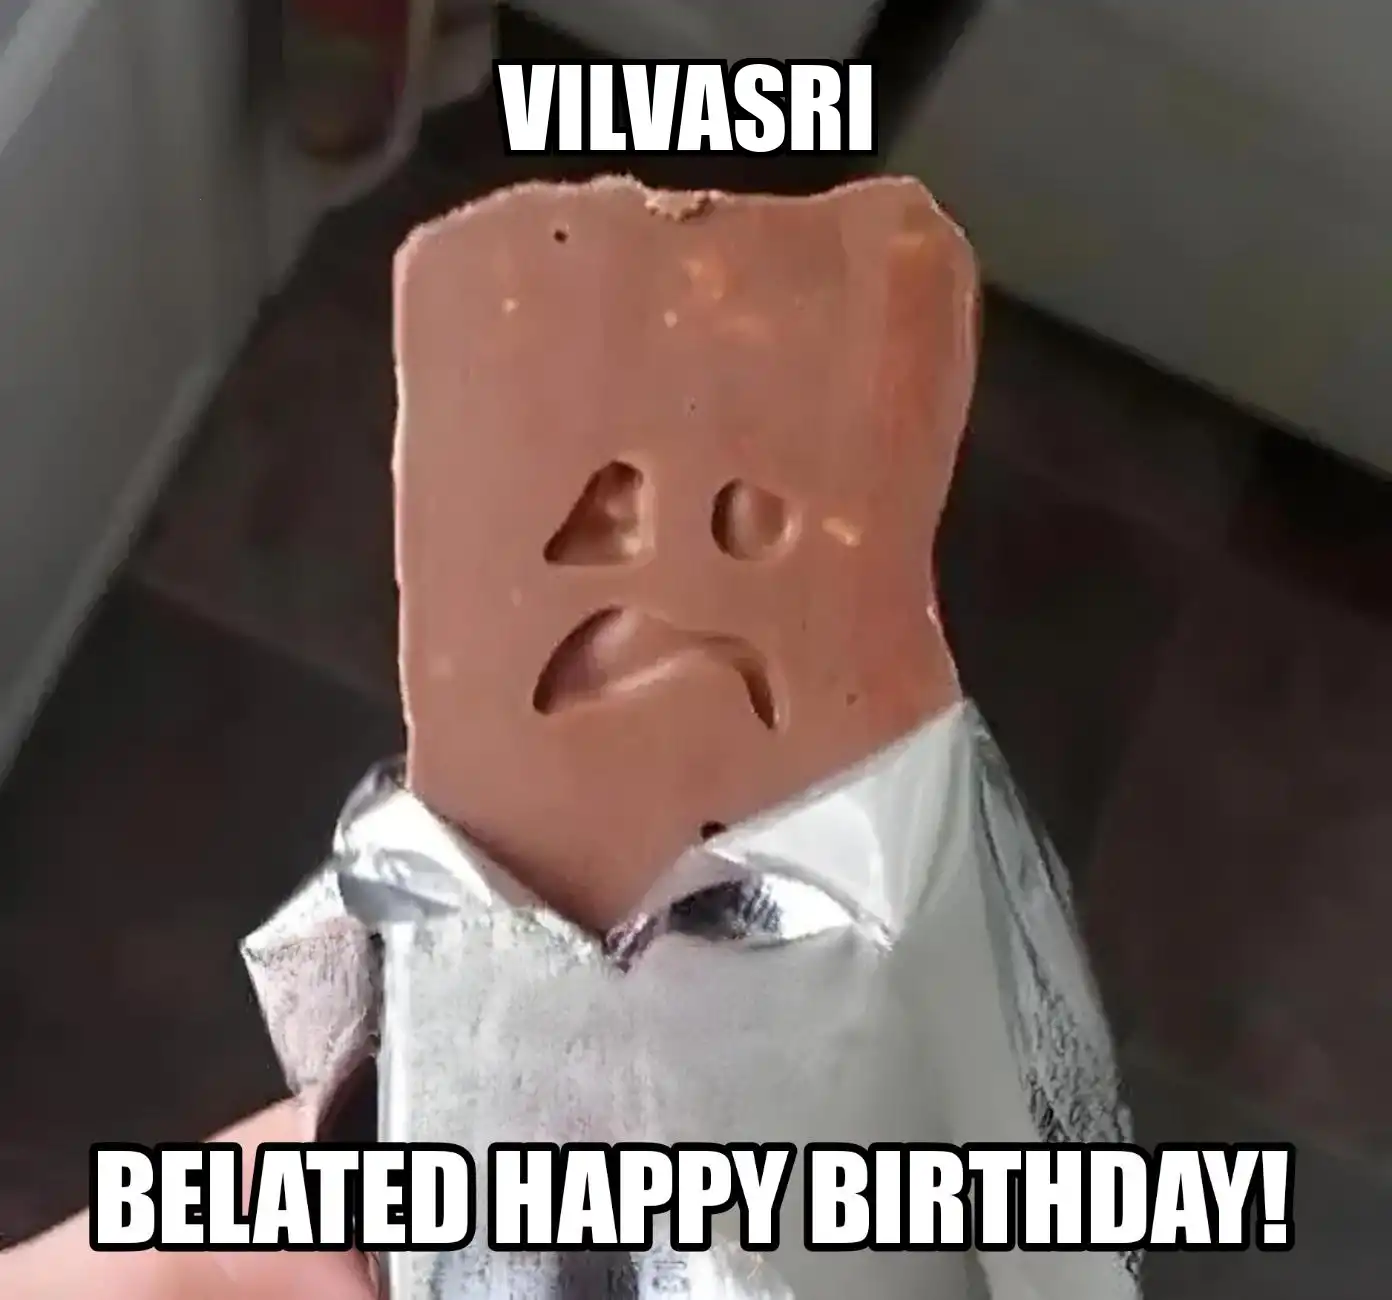 Happy Birthday Vilvasri Belated Happy Birthday Meme